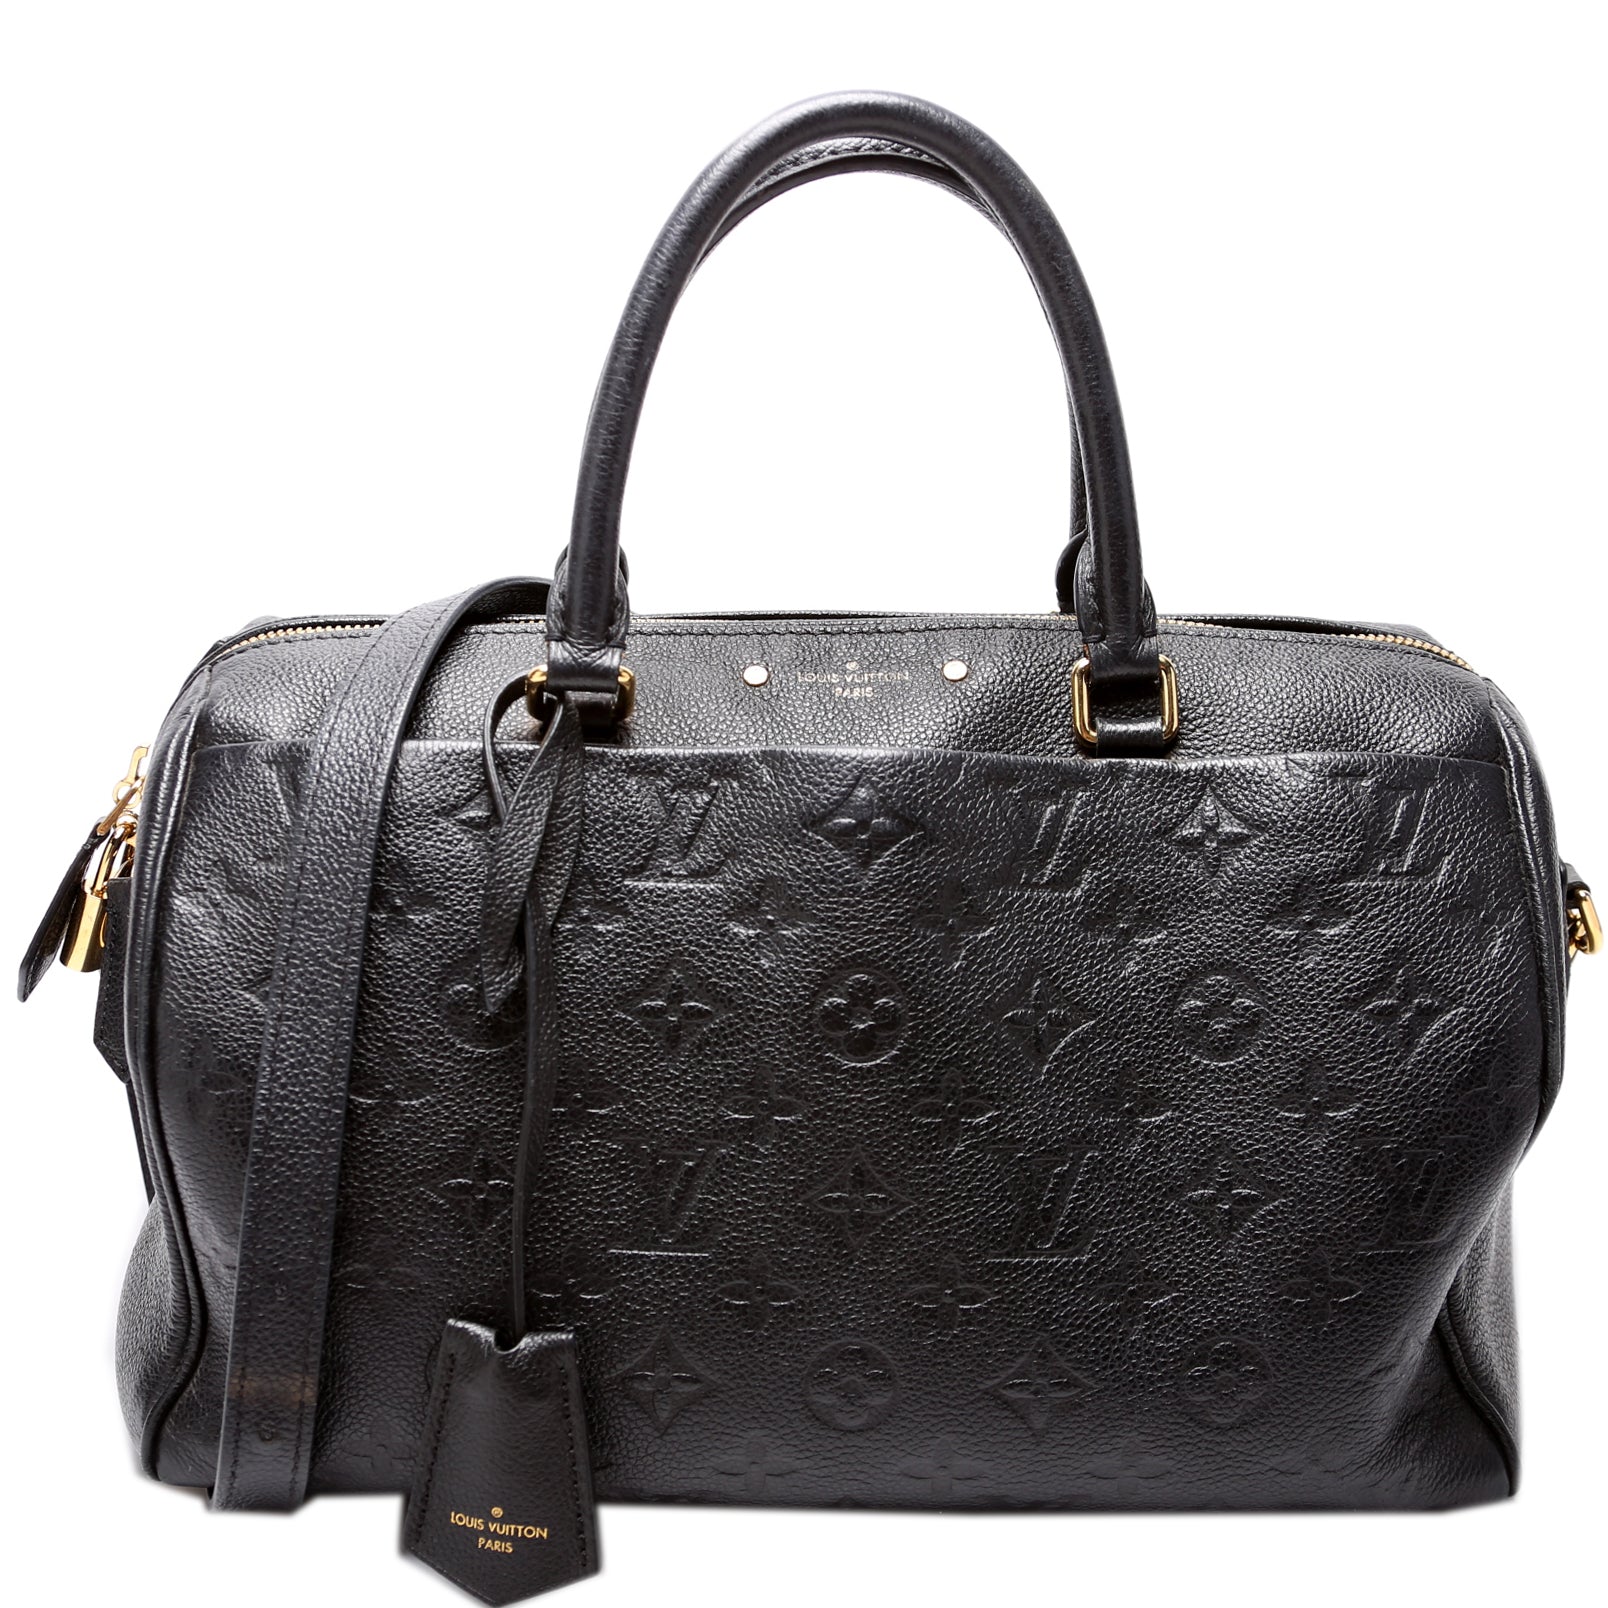 LOUIS VUITTON Speedy 30 Bandouliere Empreinte Leather Bordeaux Handbag